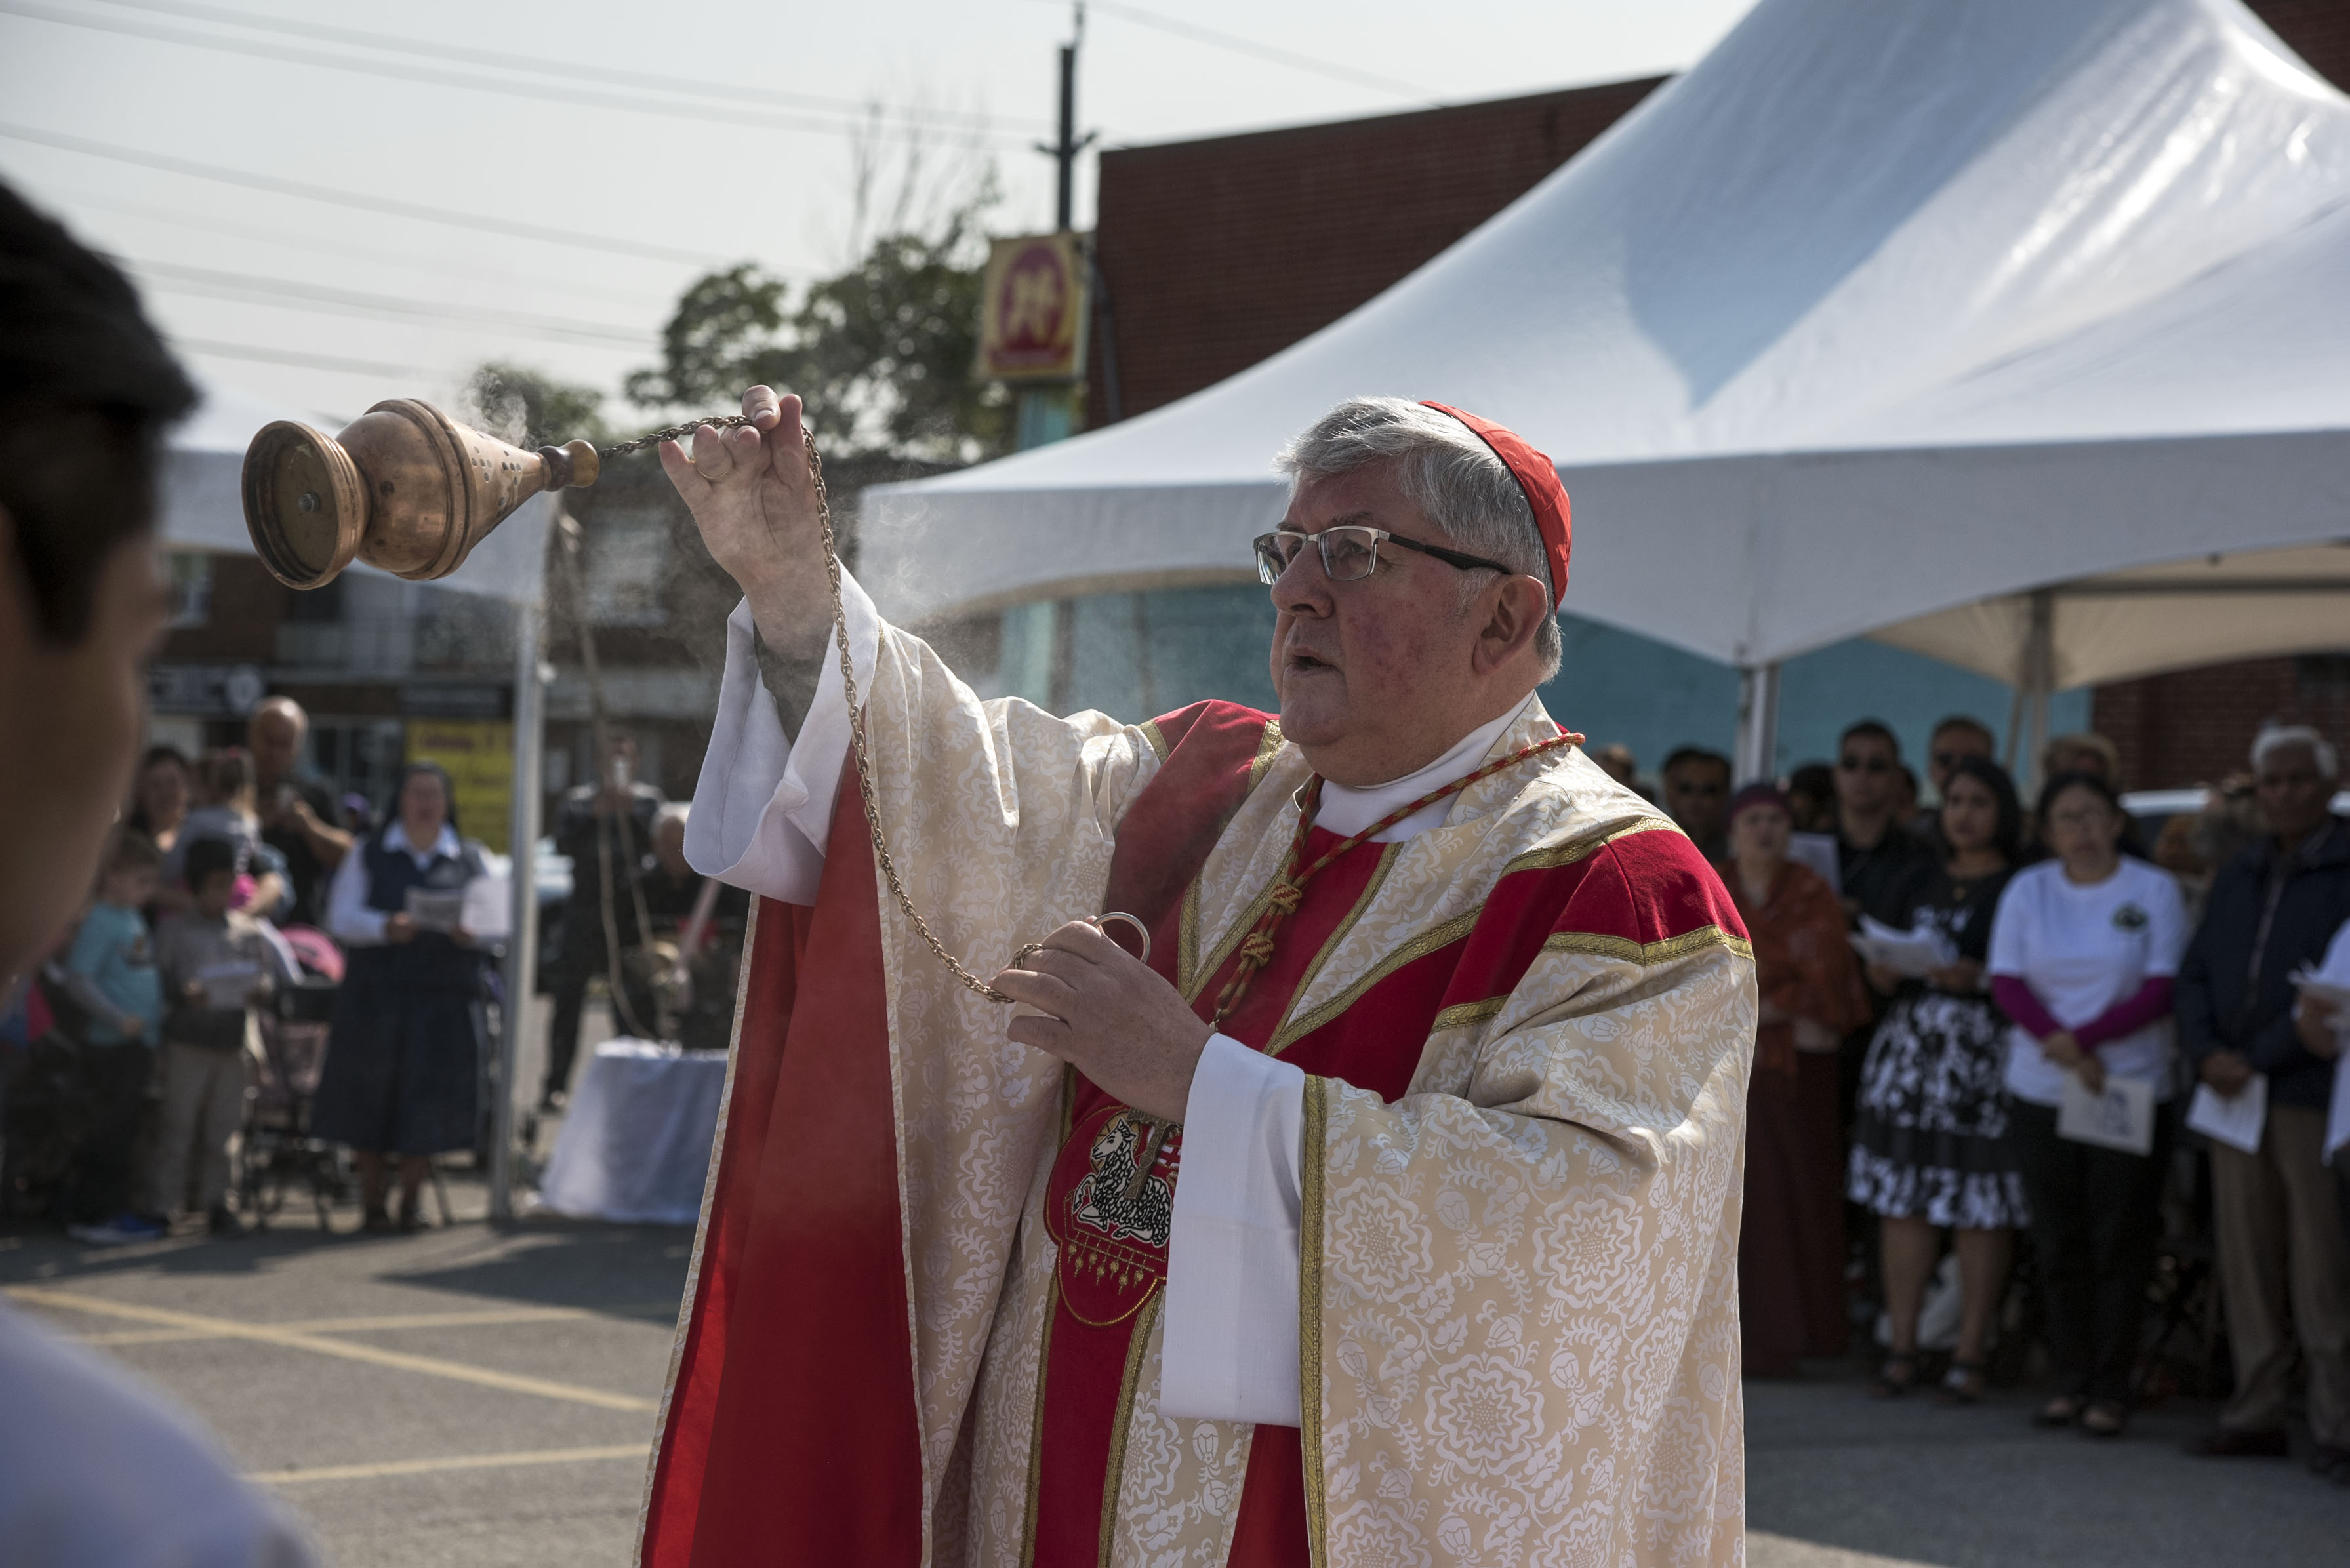 Cardinal Collins saying mass